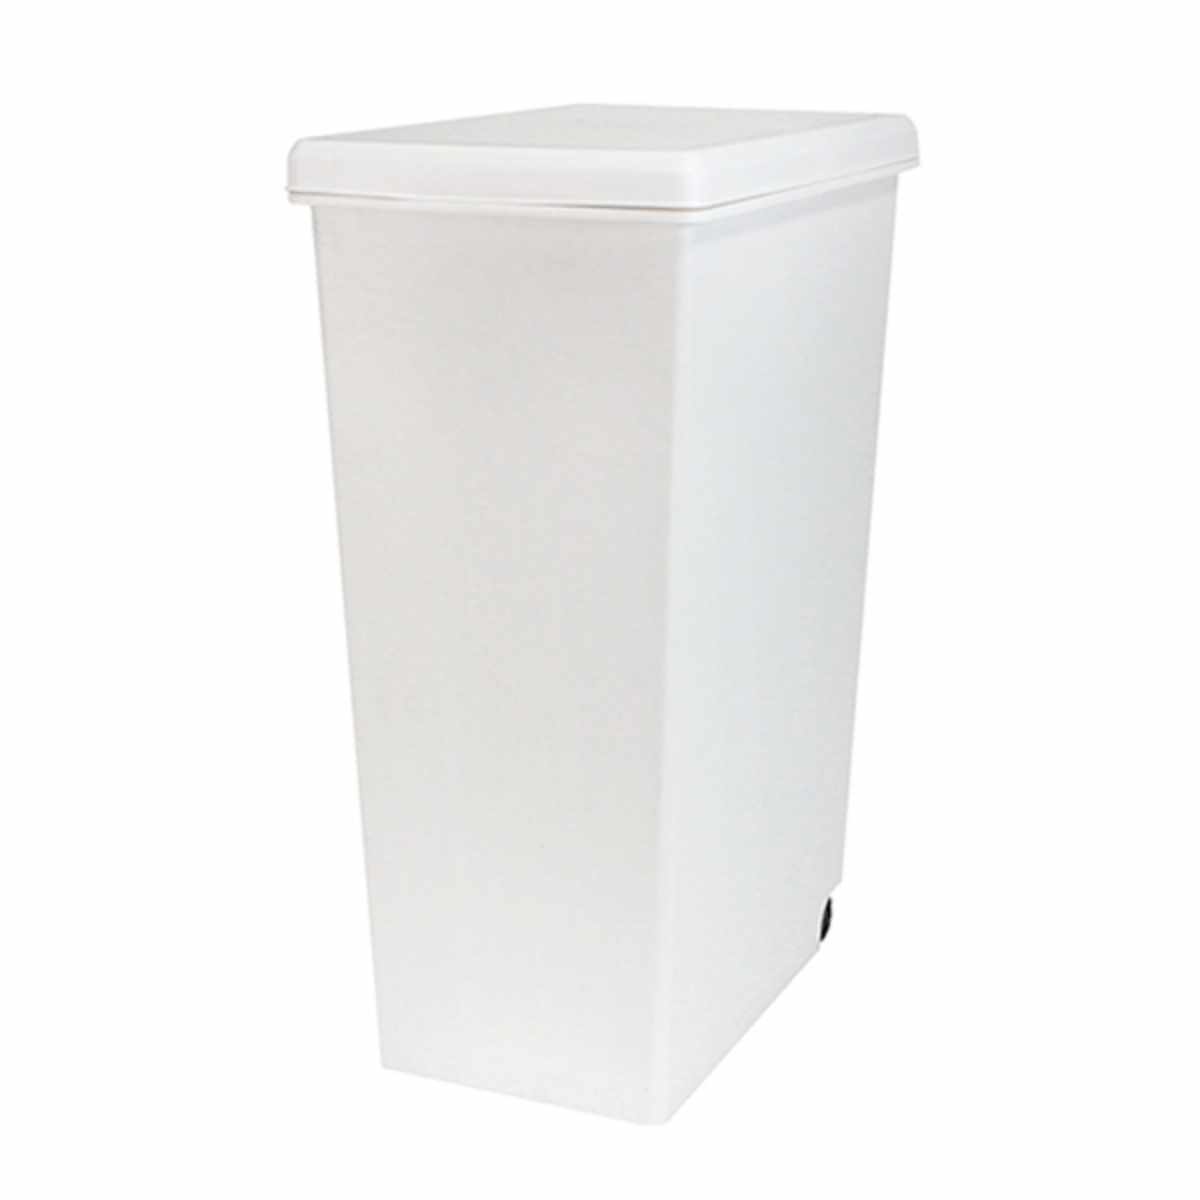 ダストボックス/蓋付きゴミ箱 【2分別】 幅55cm キャスター付き ホワイト